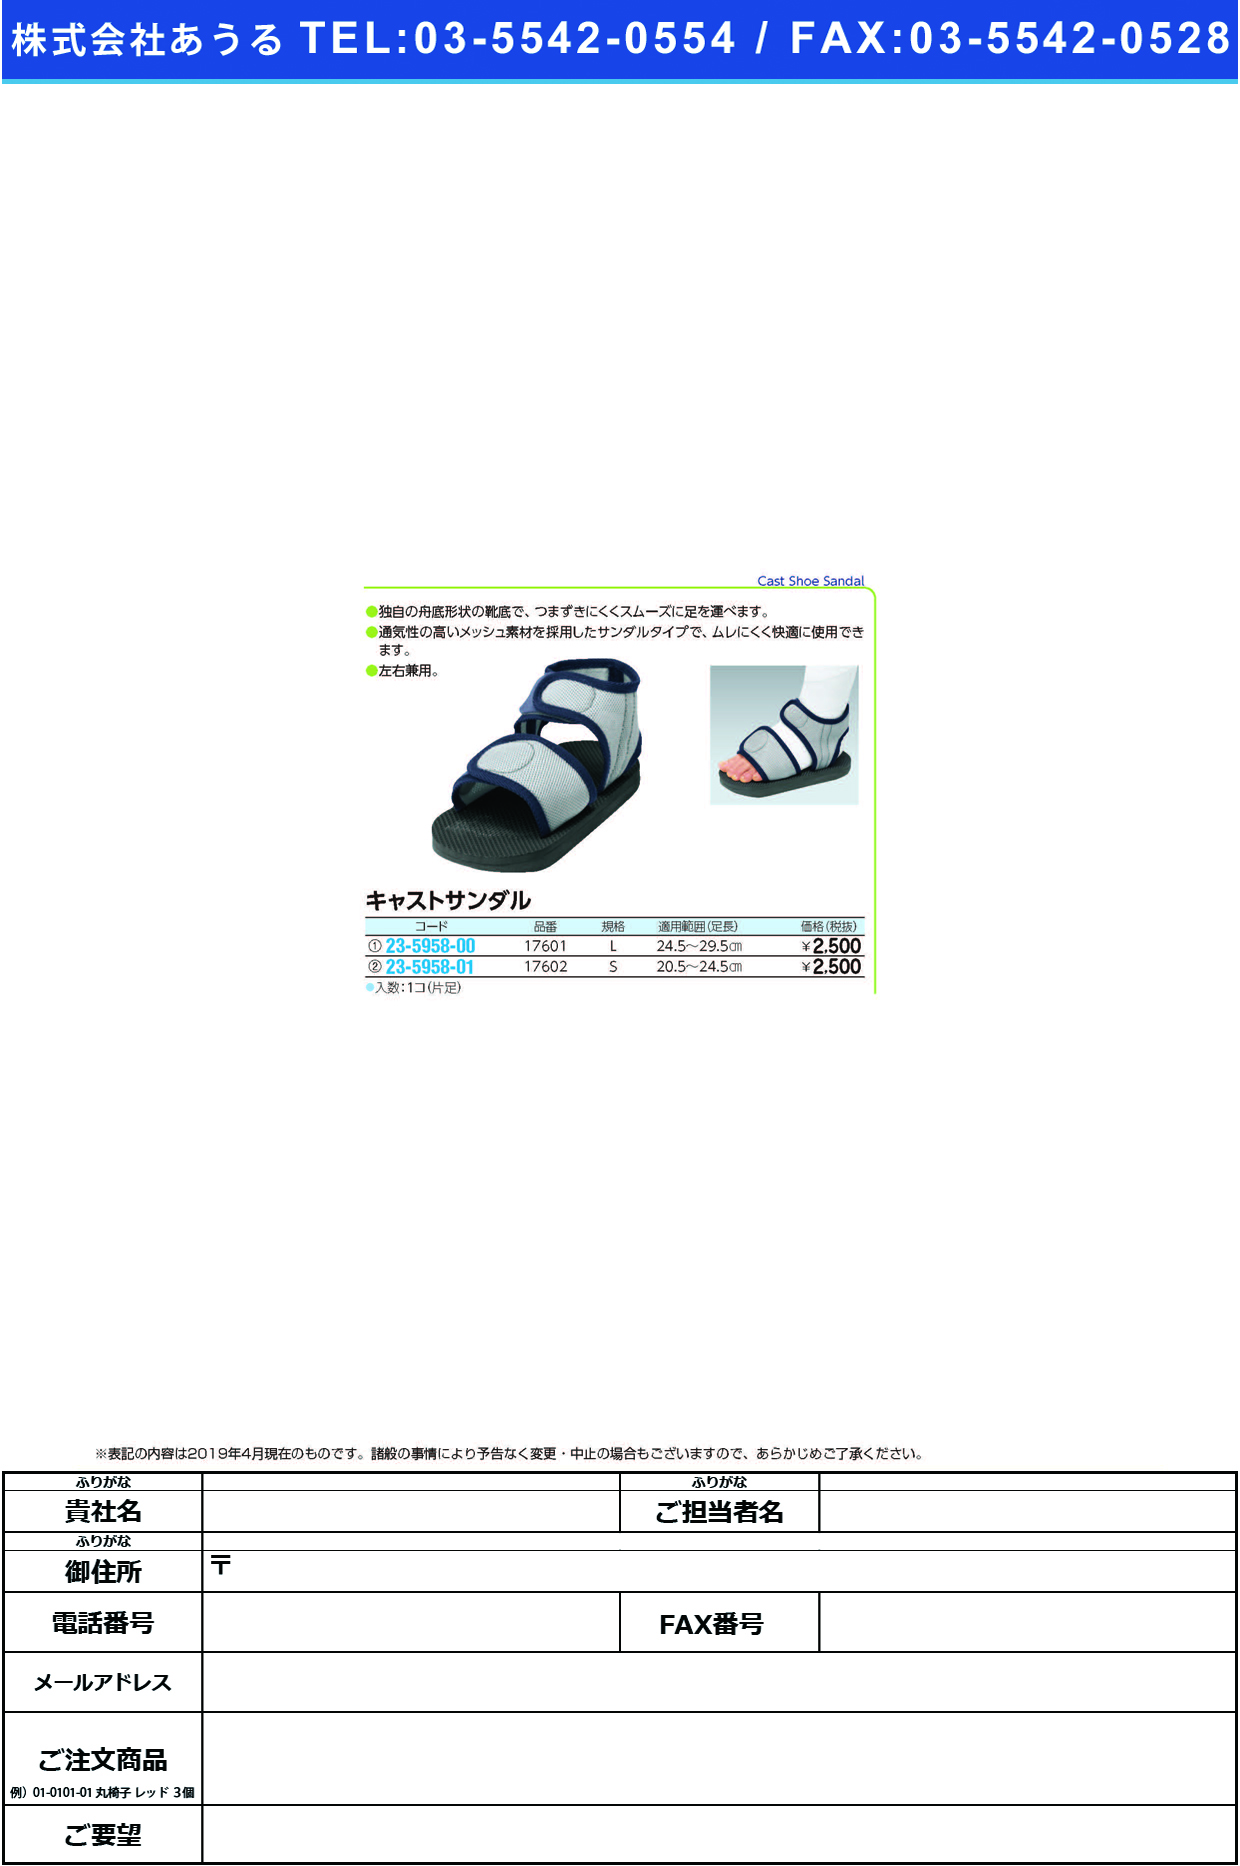 (23-5958-00)キャストサンダル（Ｌ） 17601 ｷｬｽﾄｻﾝﾀﾞﾙ(アルケア)【1箱単位】【2019年カタログ商品】